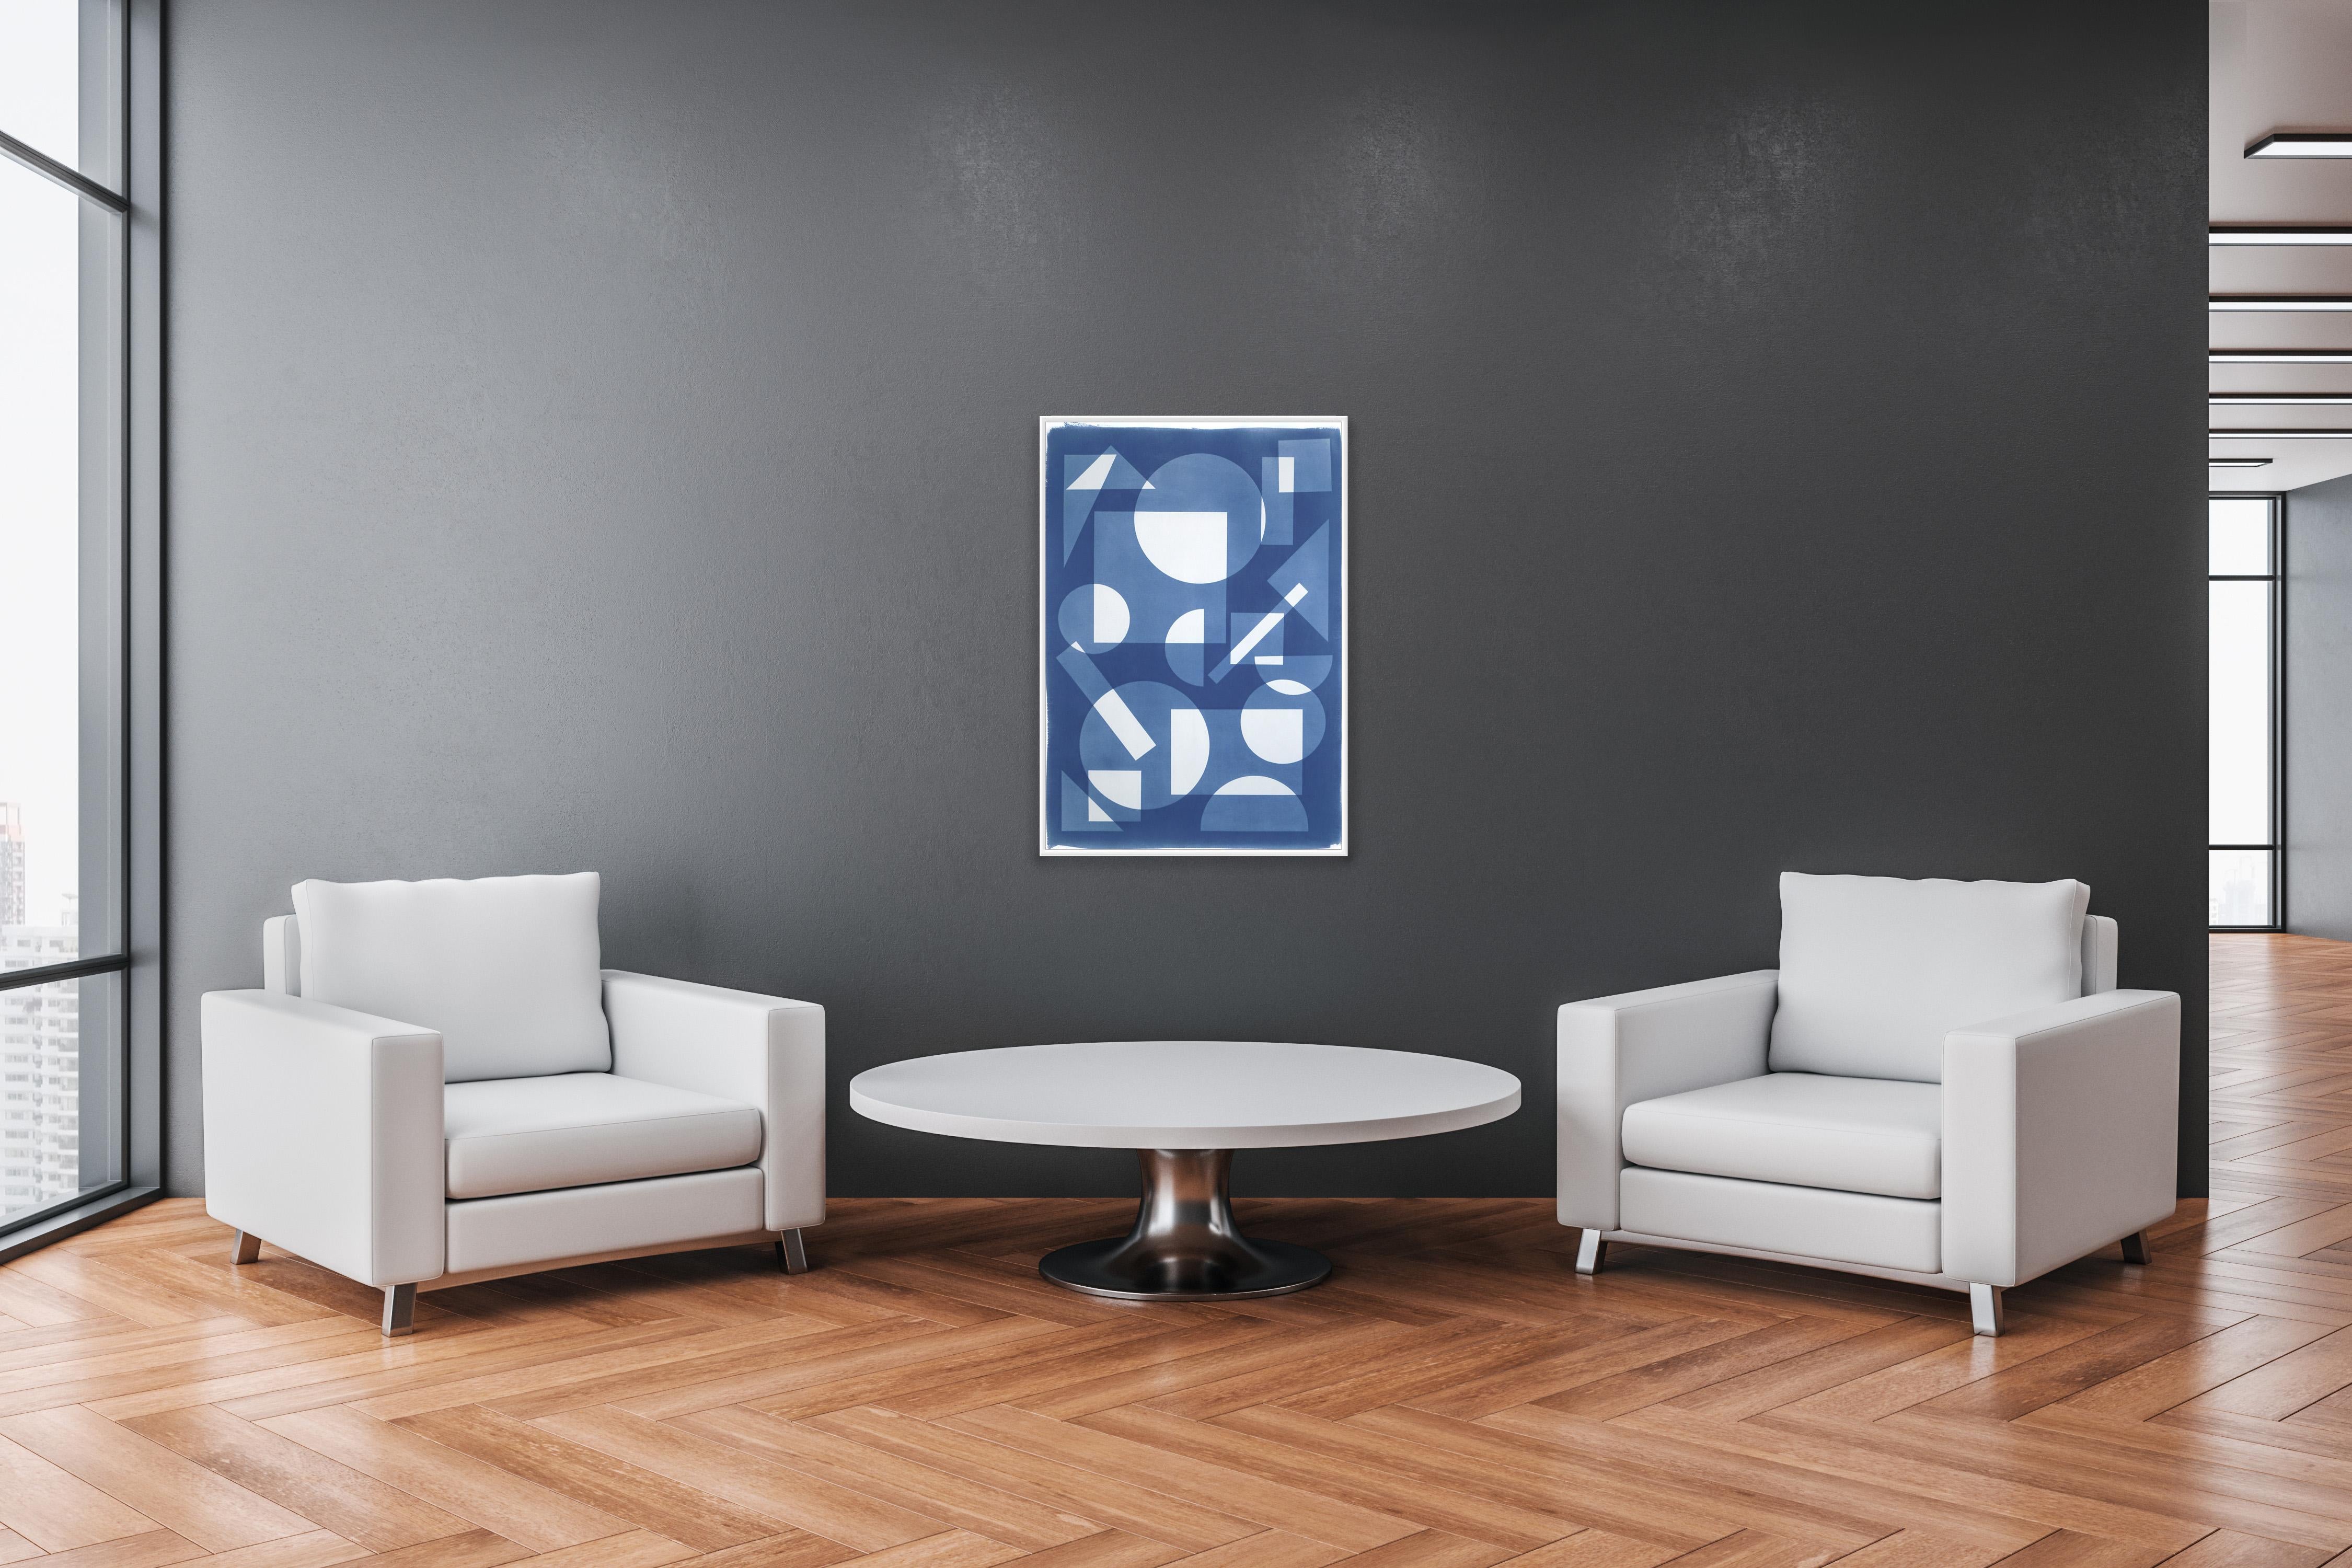 Konstruktivistische Monotypie in schwebenden Formen, weiße und blaue Geometrie – Print von Kind of Cyan